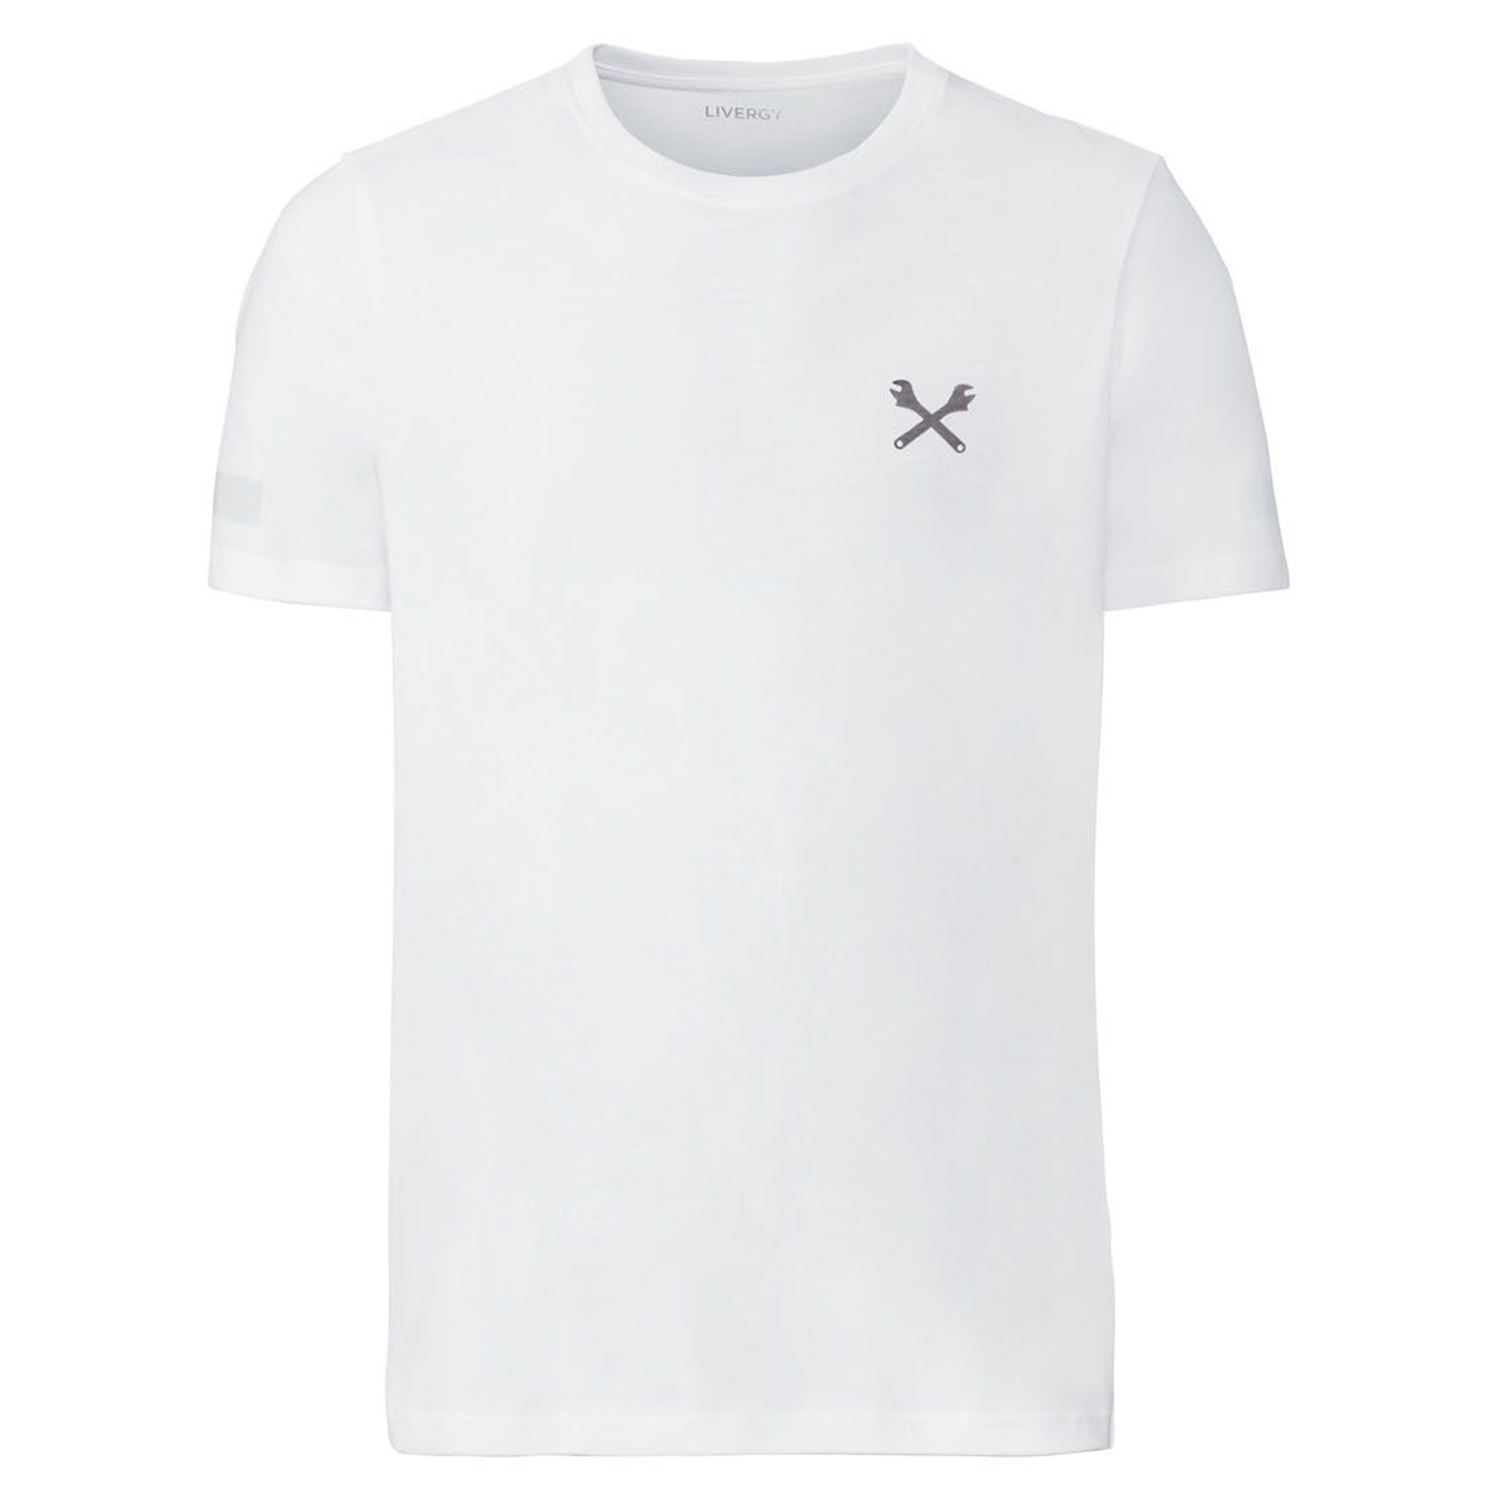 تی شرت آستین کوتاه مردانه لیورجی مدل آچار کد Work2022 رنگ سفید